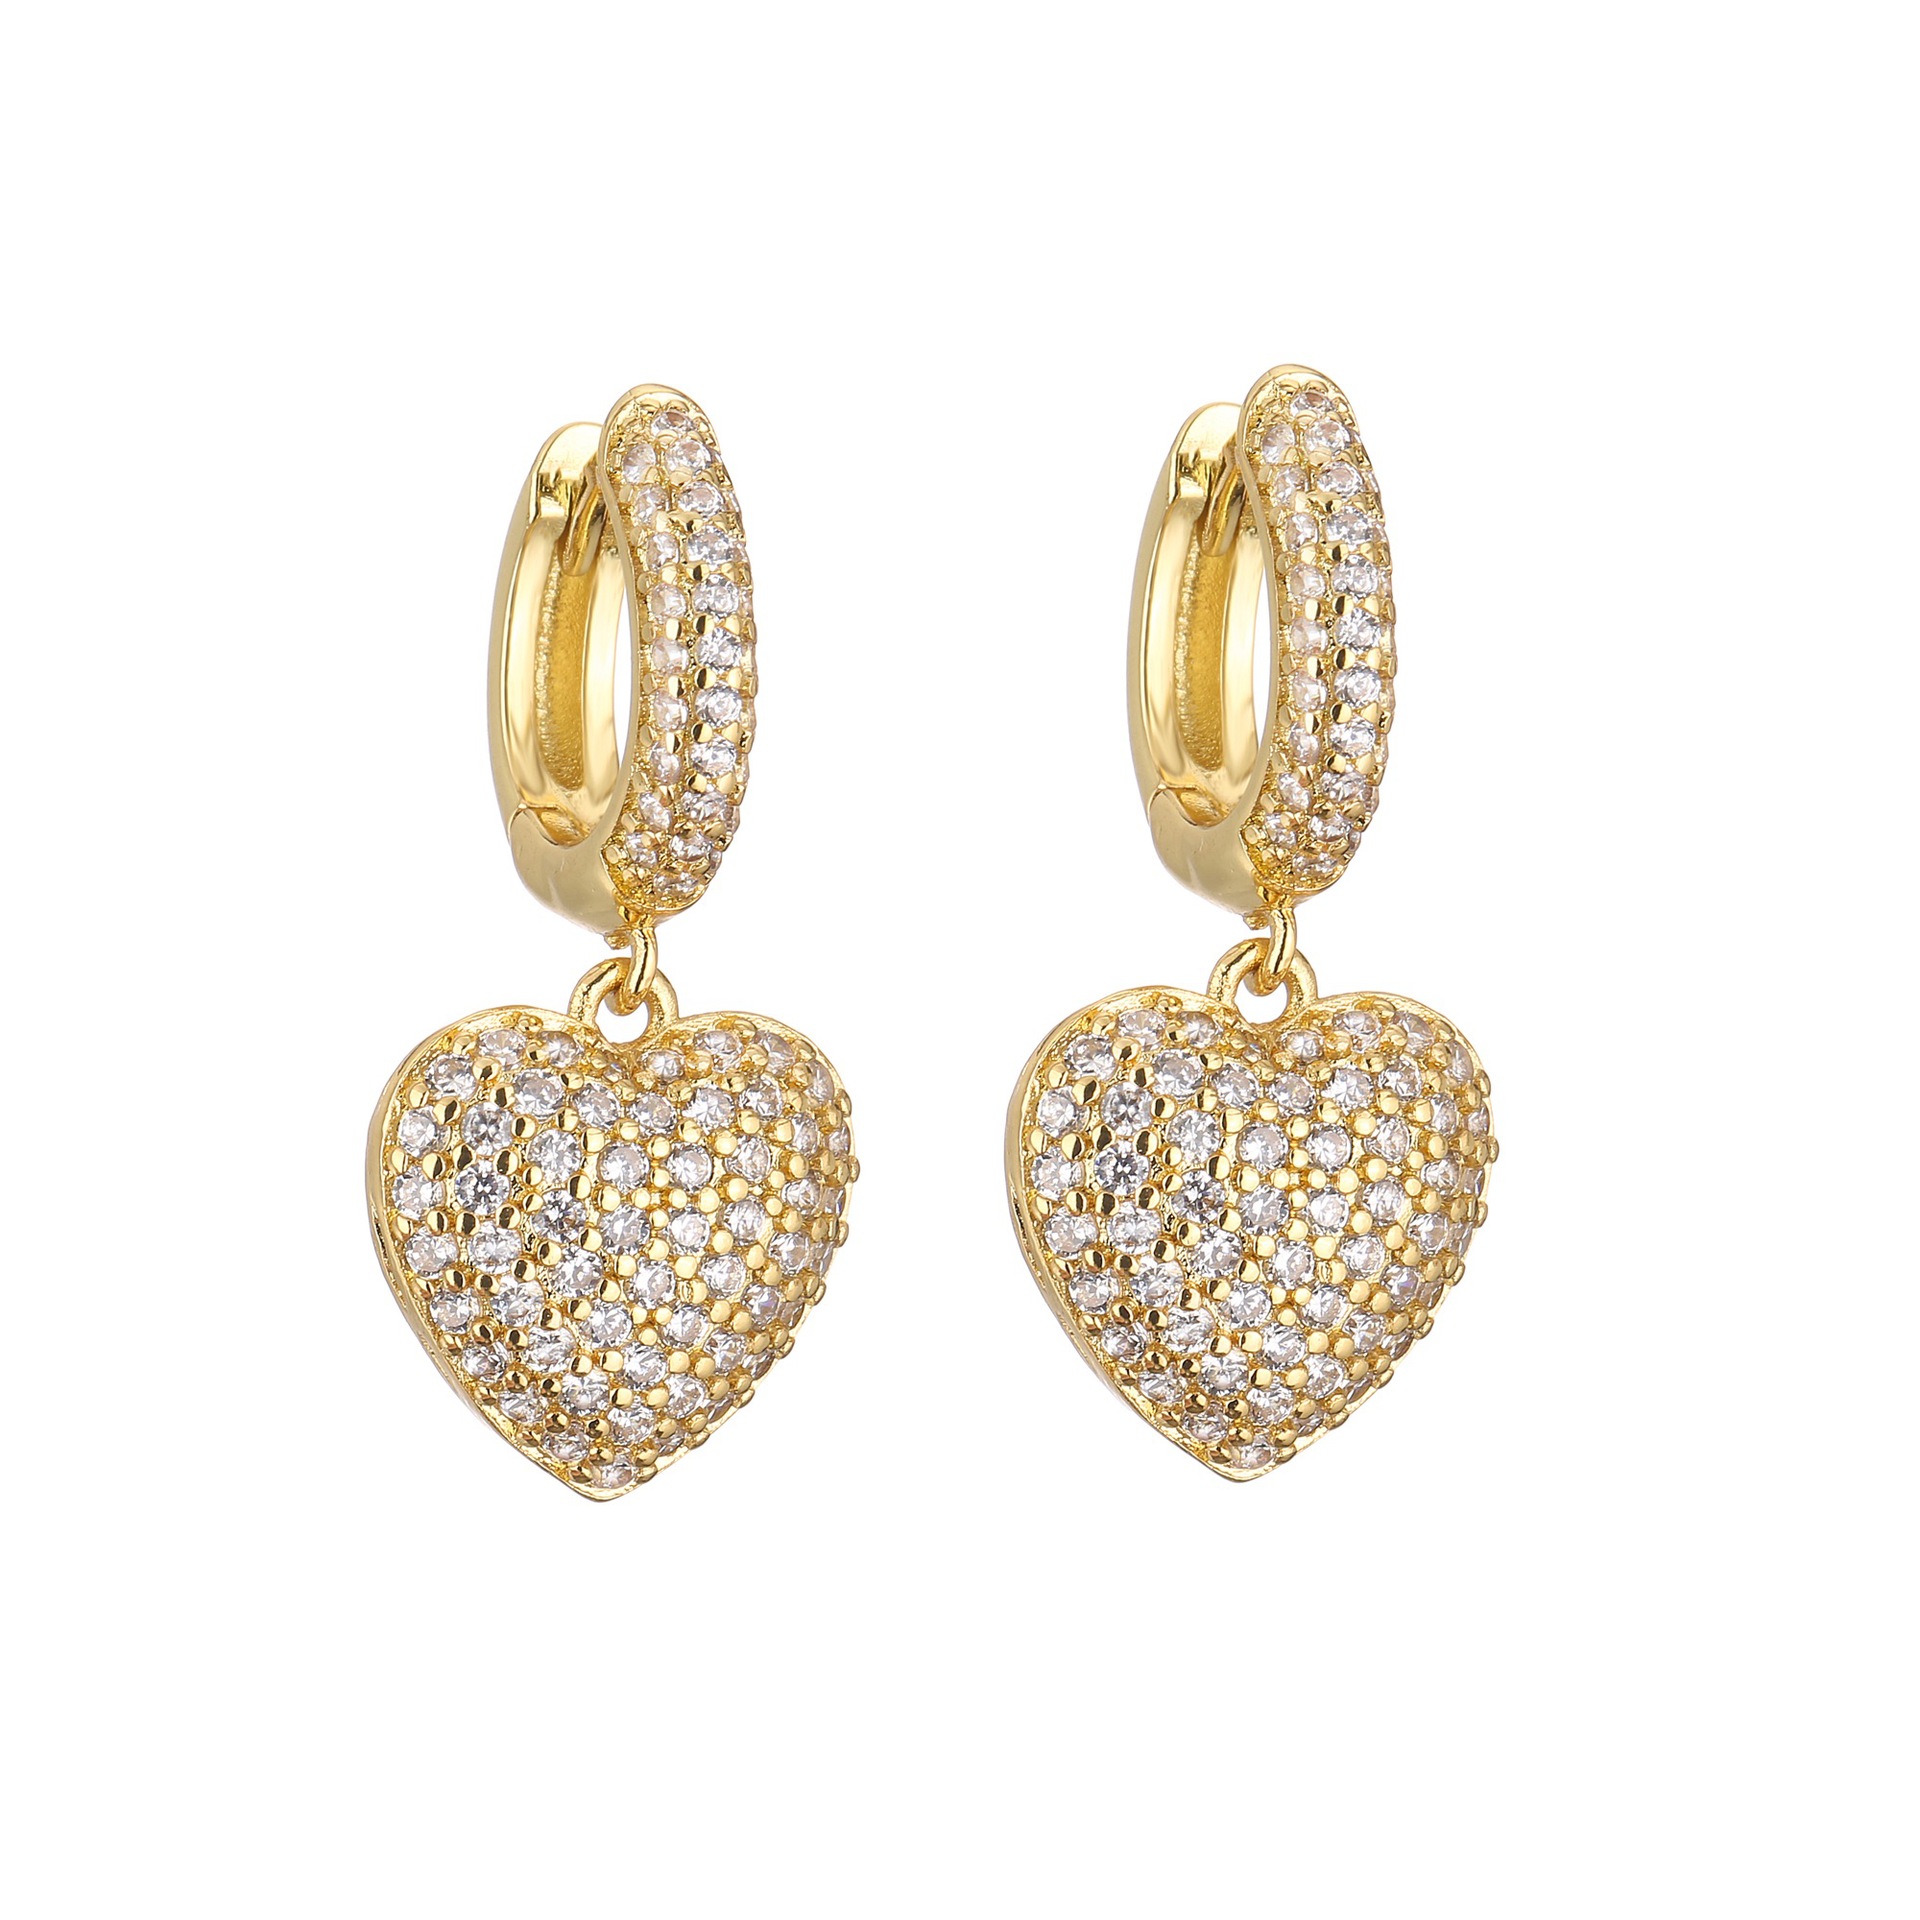 3:1 pair of gold earrings